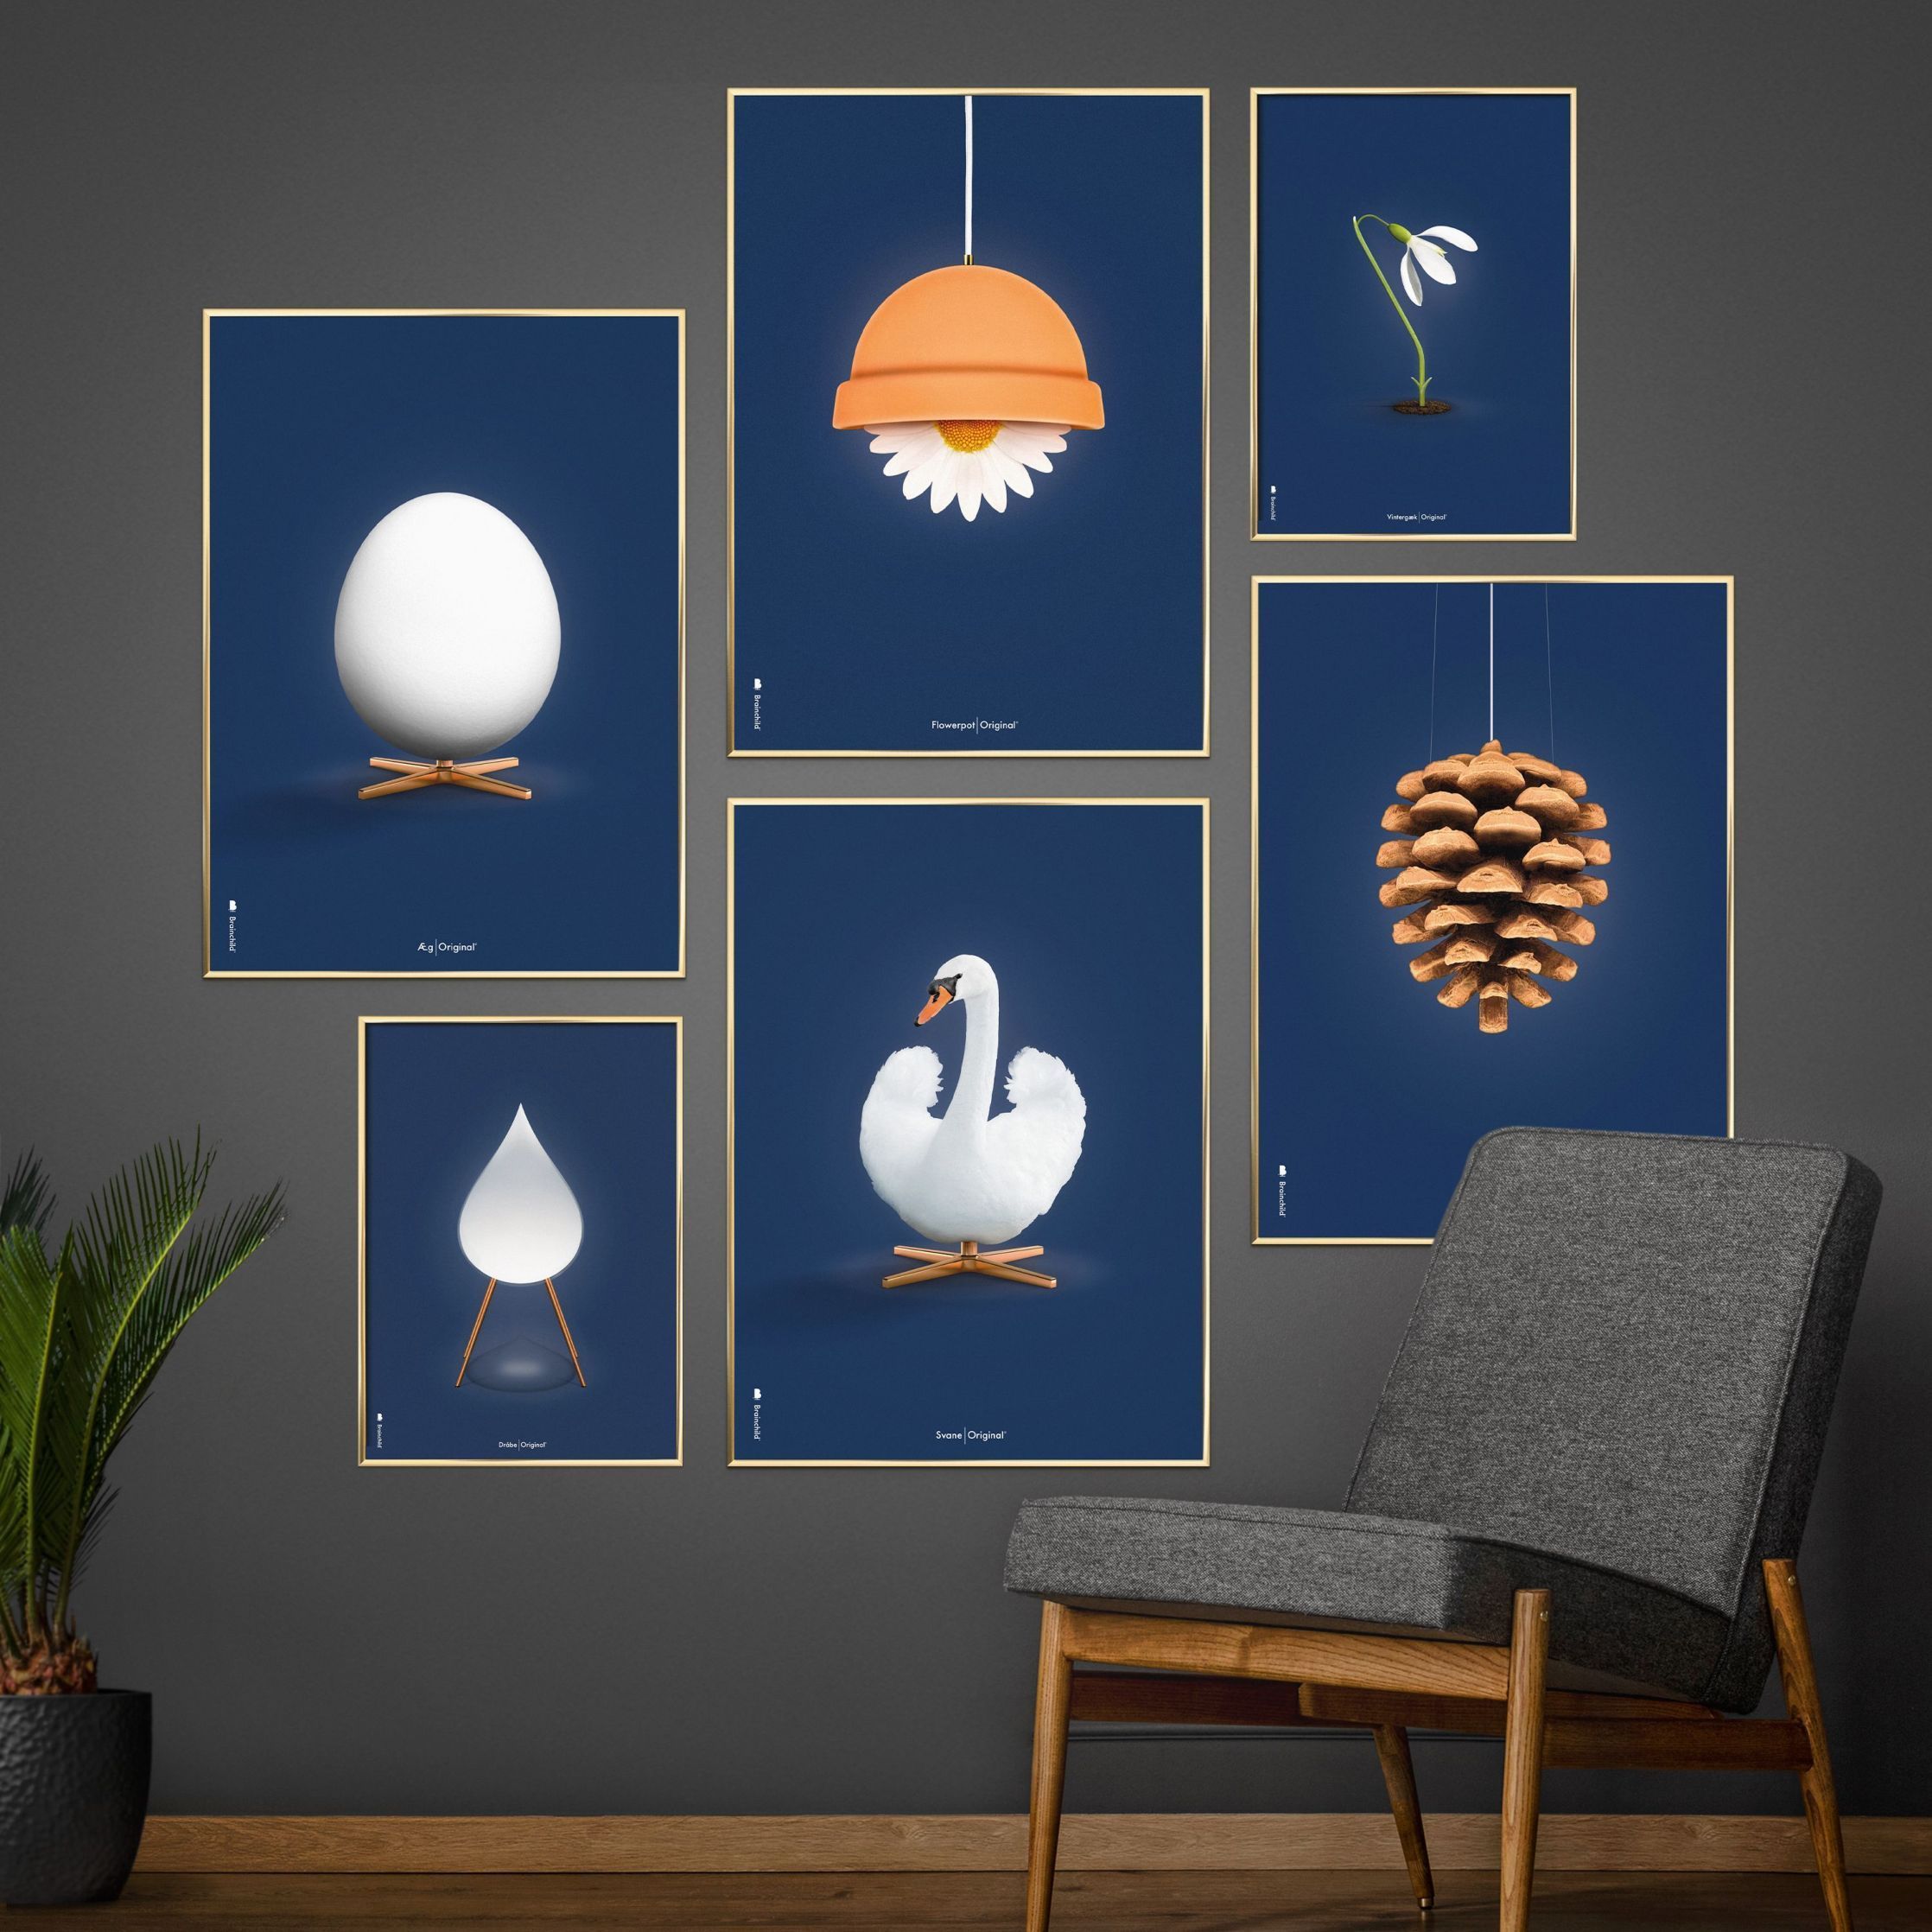 Brainchild Swan Classic Affisch No Frame 50x70 cm, mörkblå bakgrund